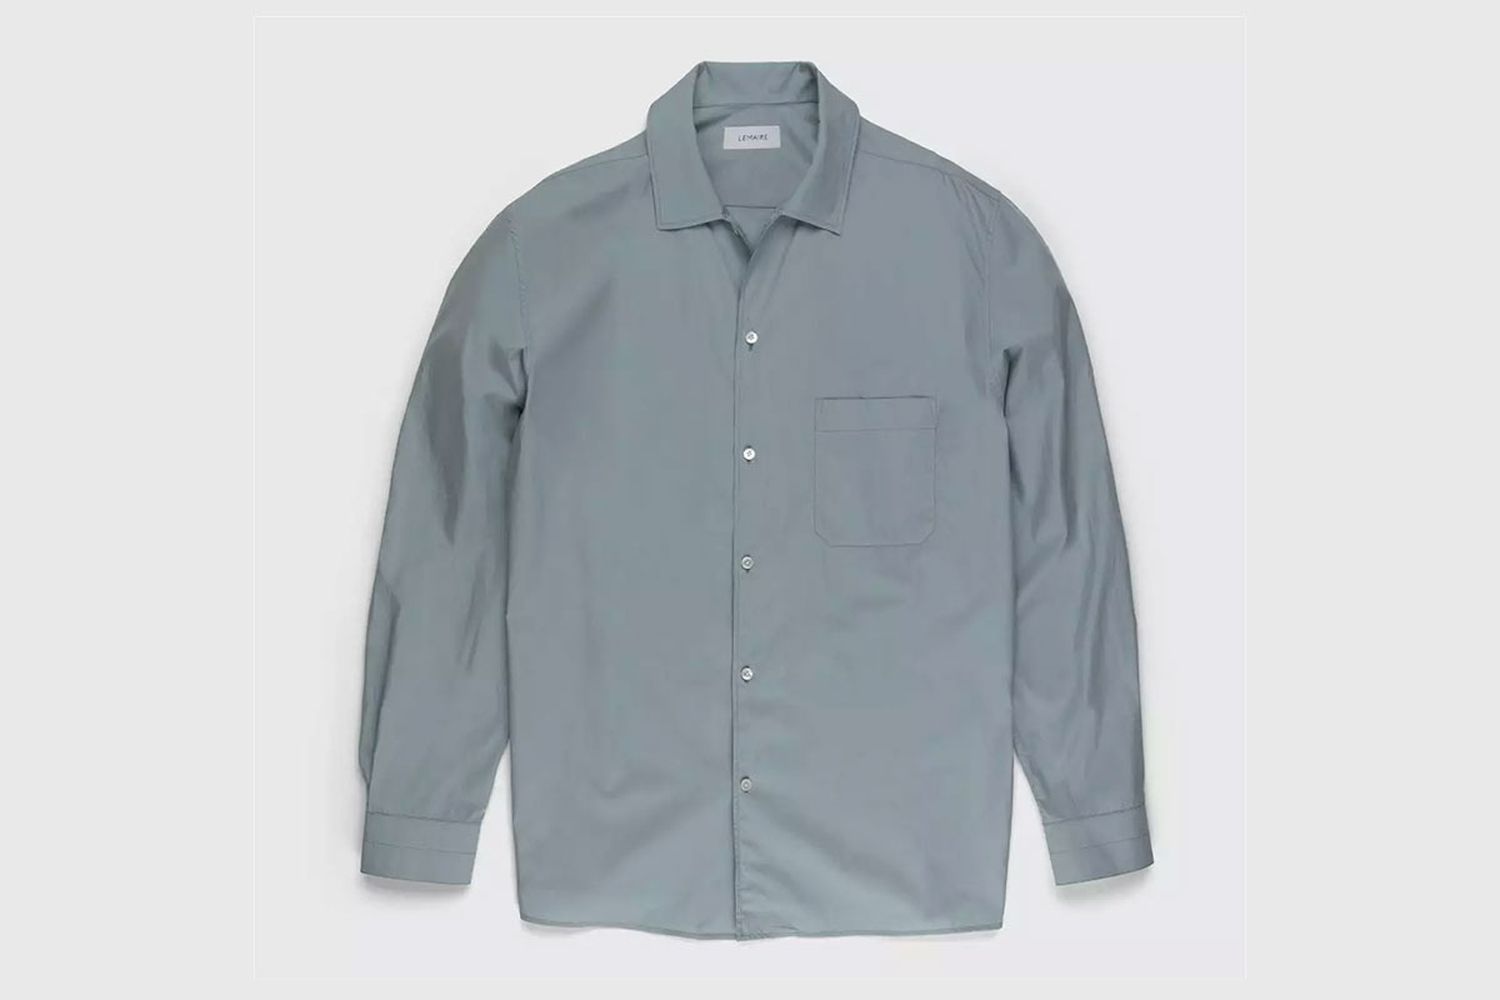 Convertible Collar Long Sleeve Shirt Light Blue